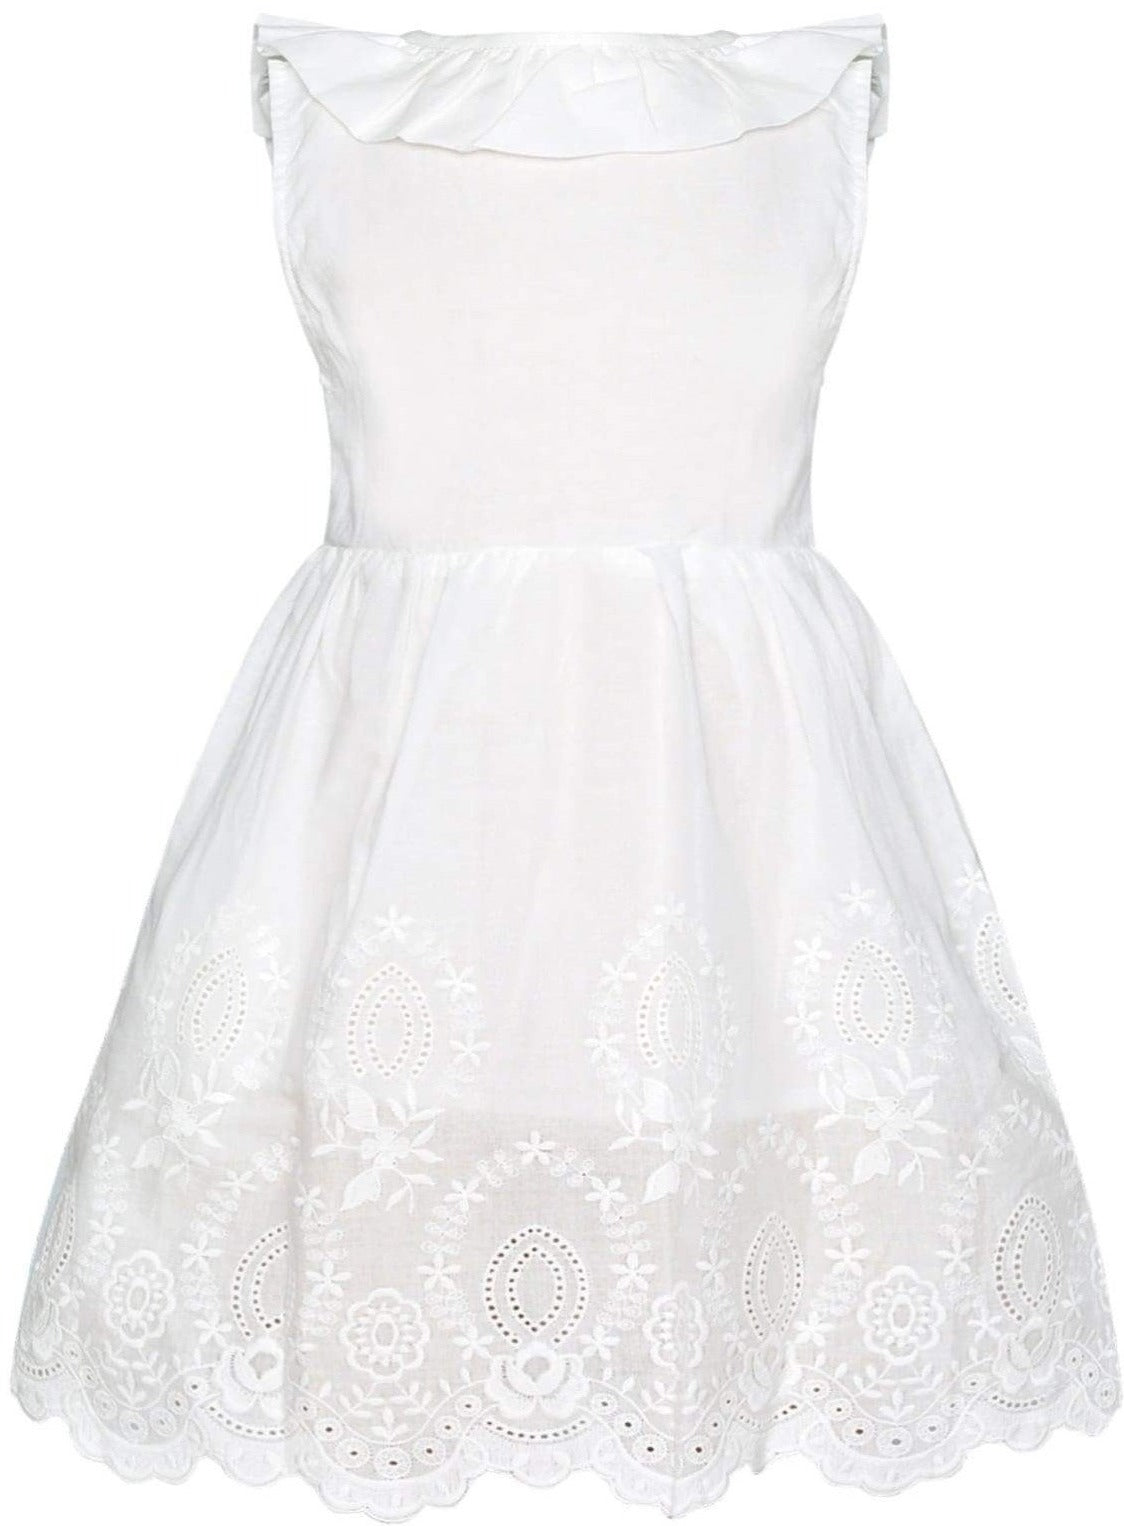 Mia Belle Girls White Lace Ruffled Dress | Girls Resort Wear